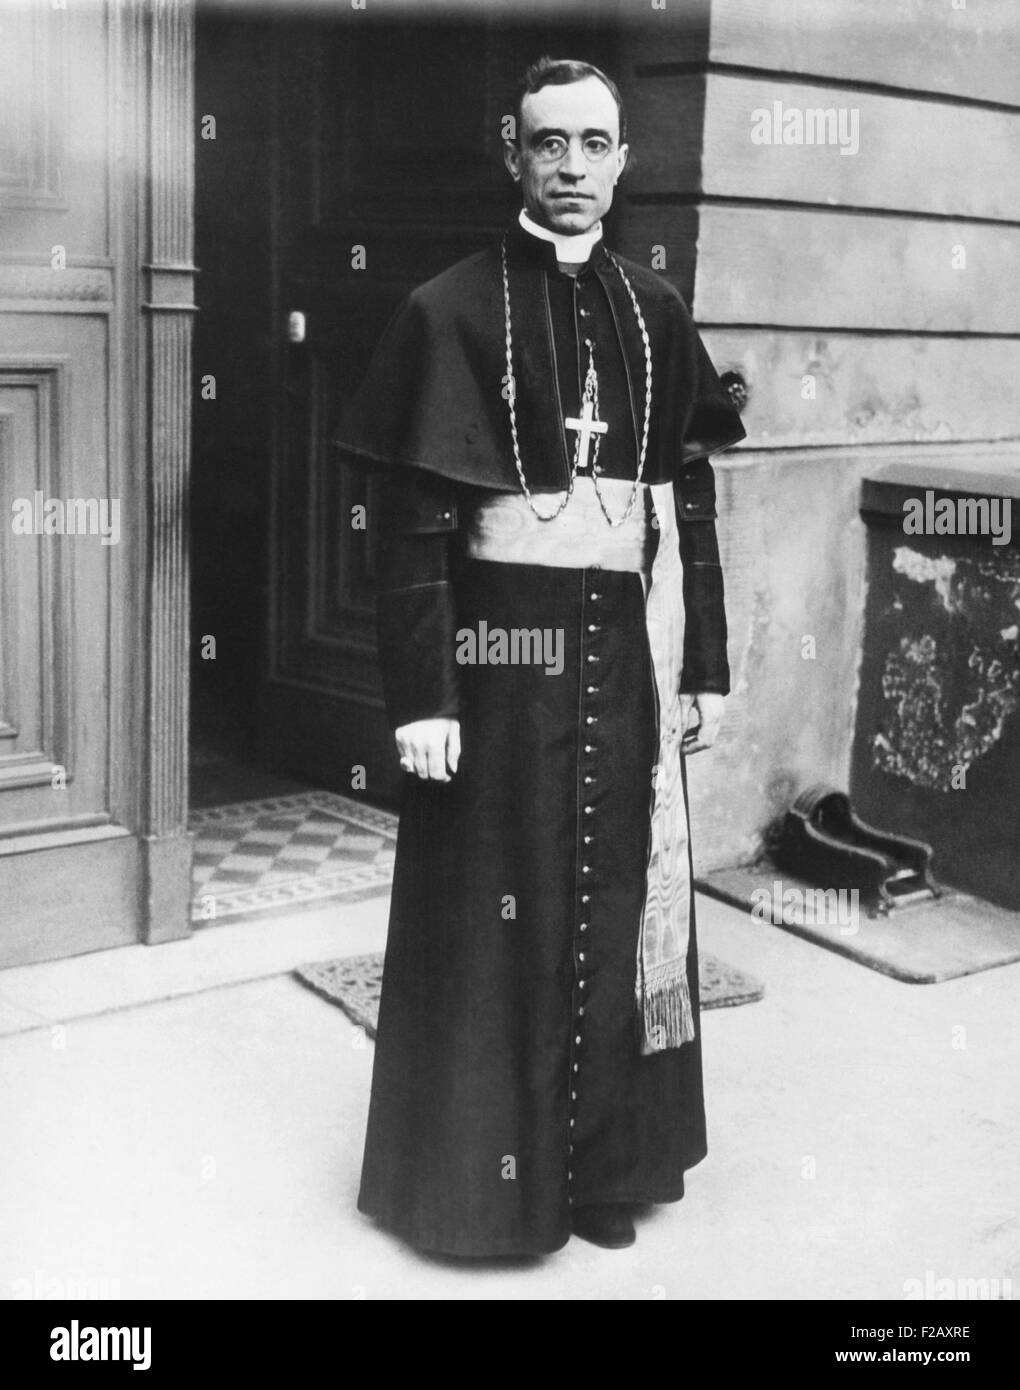 Bischof Eugenio Pacelli, der zukünftige Papst Pius XII., ca. 1925. Von 1917 bis 1929 war er der päpstlichen Botschafter in München, das Zentrum der wachsenden NS-Bewegung. (CSU 2015 9 995) Stockfoto